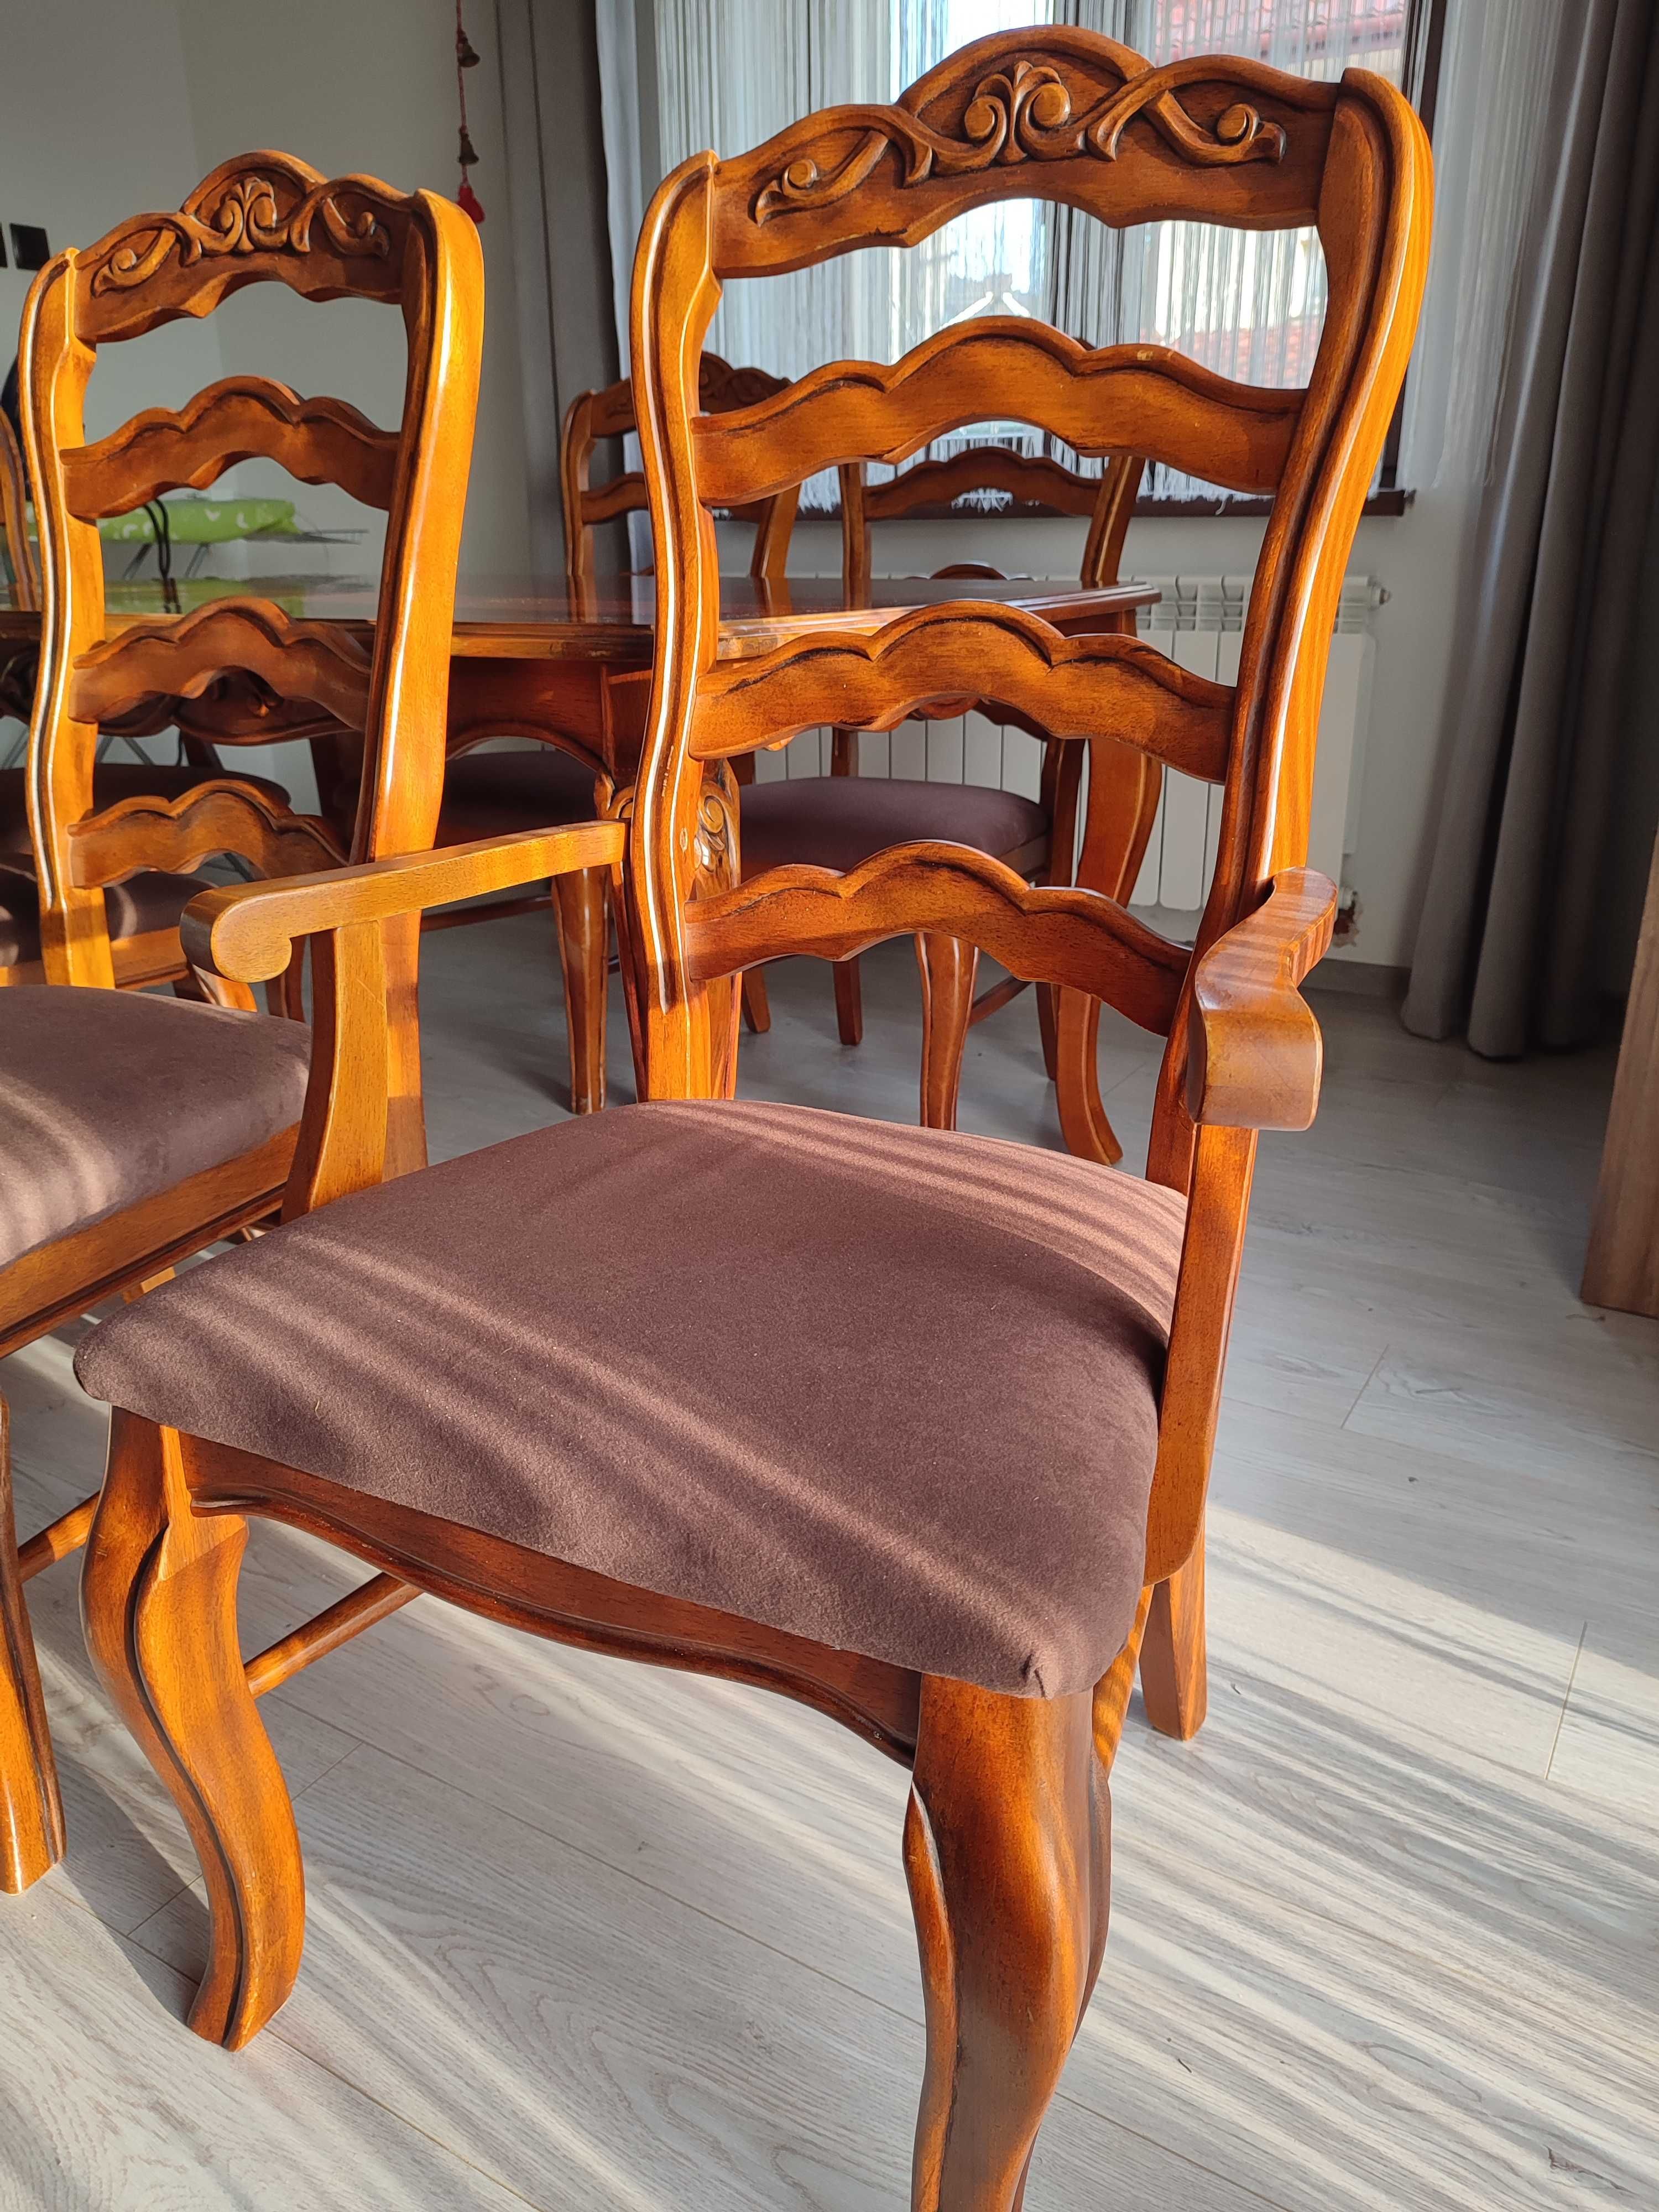 Stół + krzesła + fotele. Lite drewno, ładne zdobienia.